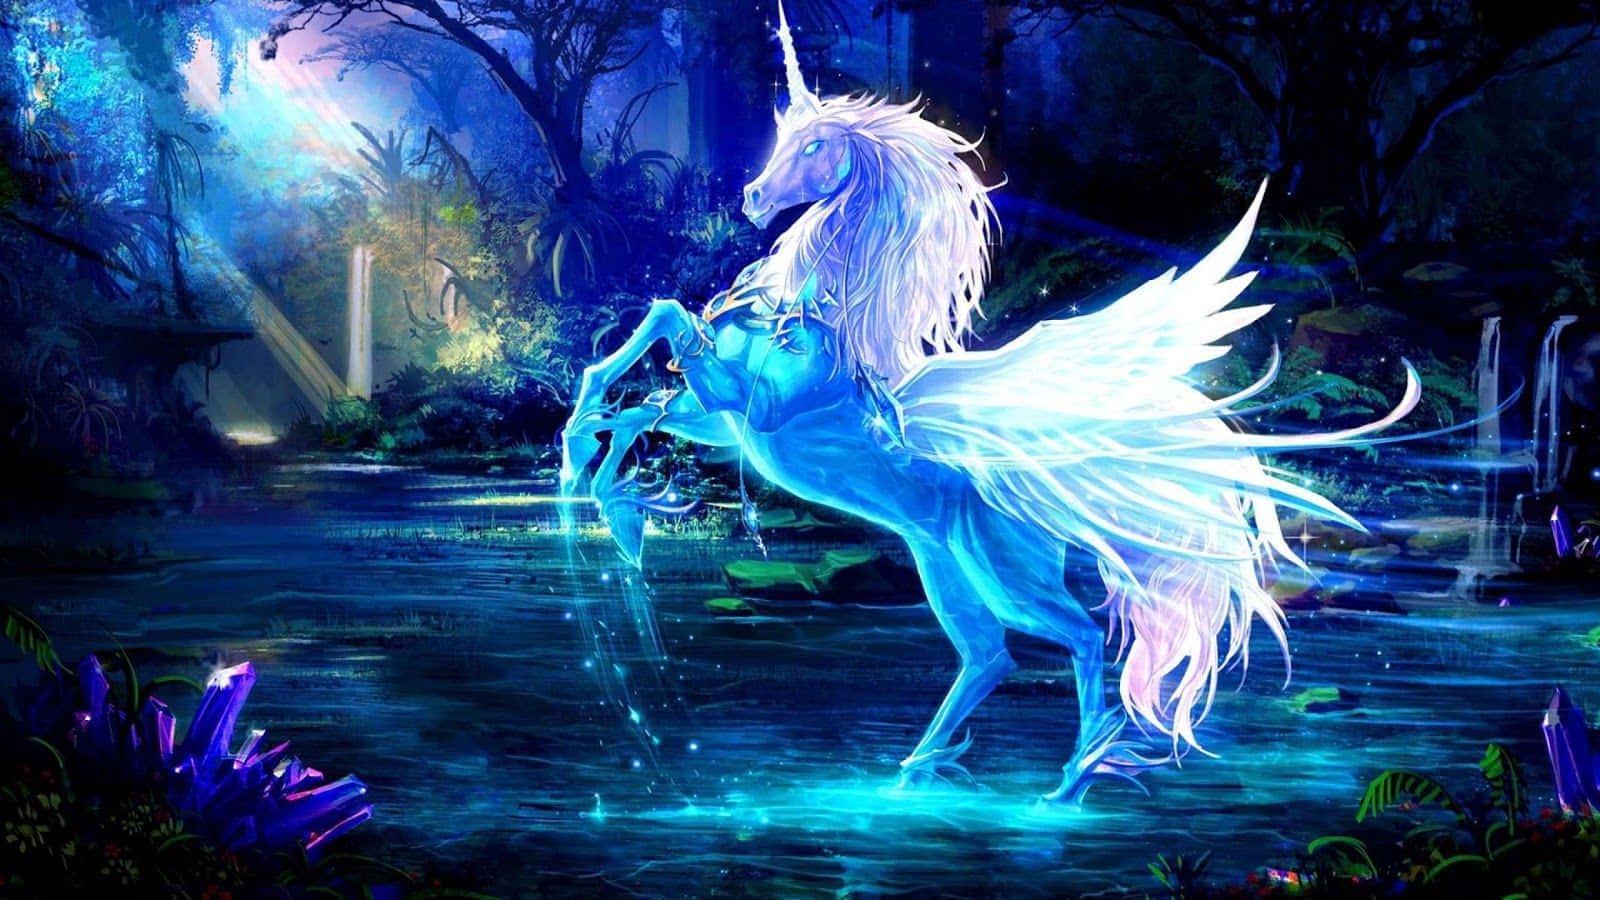 "A Glimpse into Magic: A Real Unicorn" Wallpaper